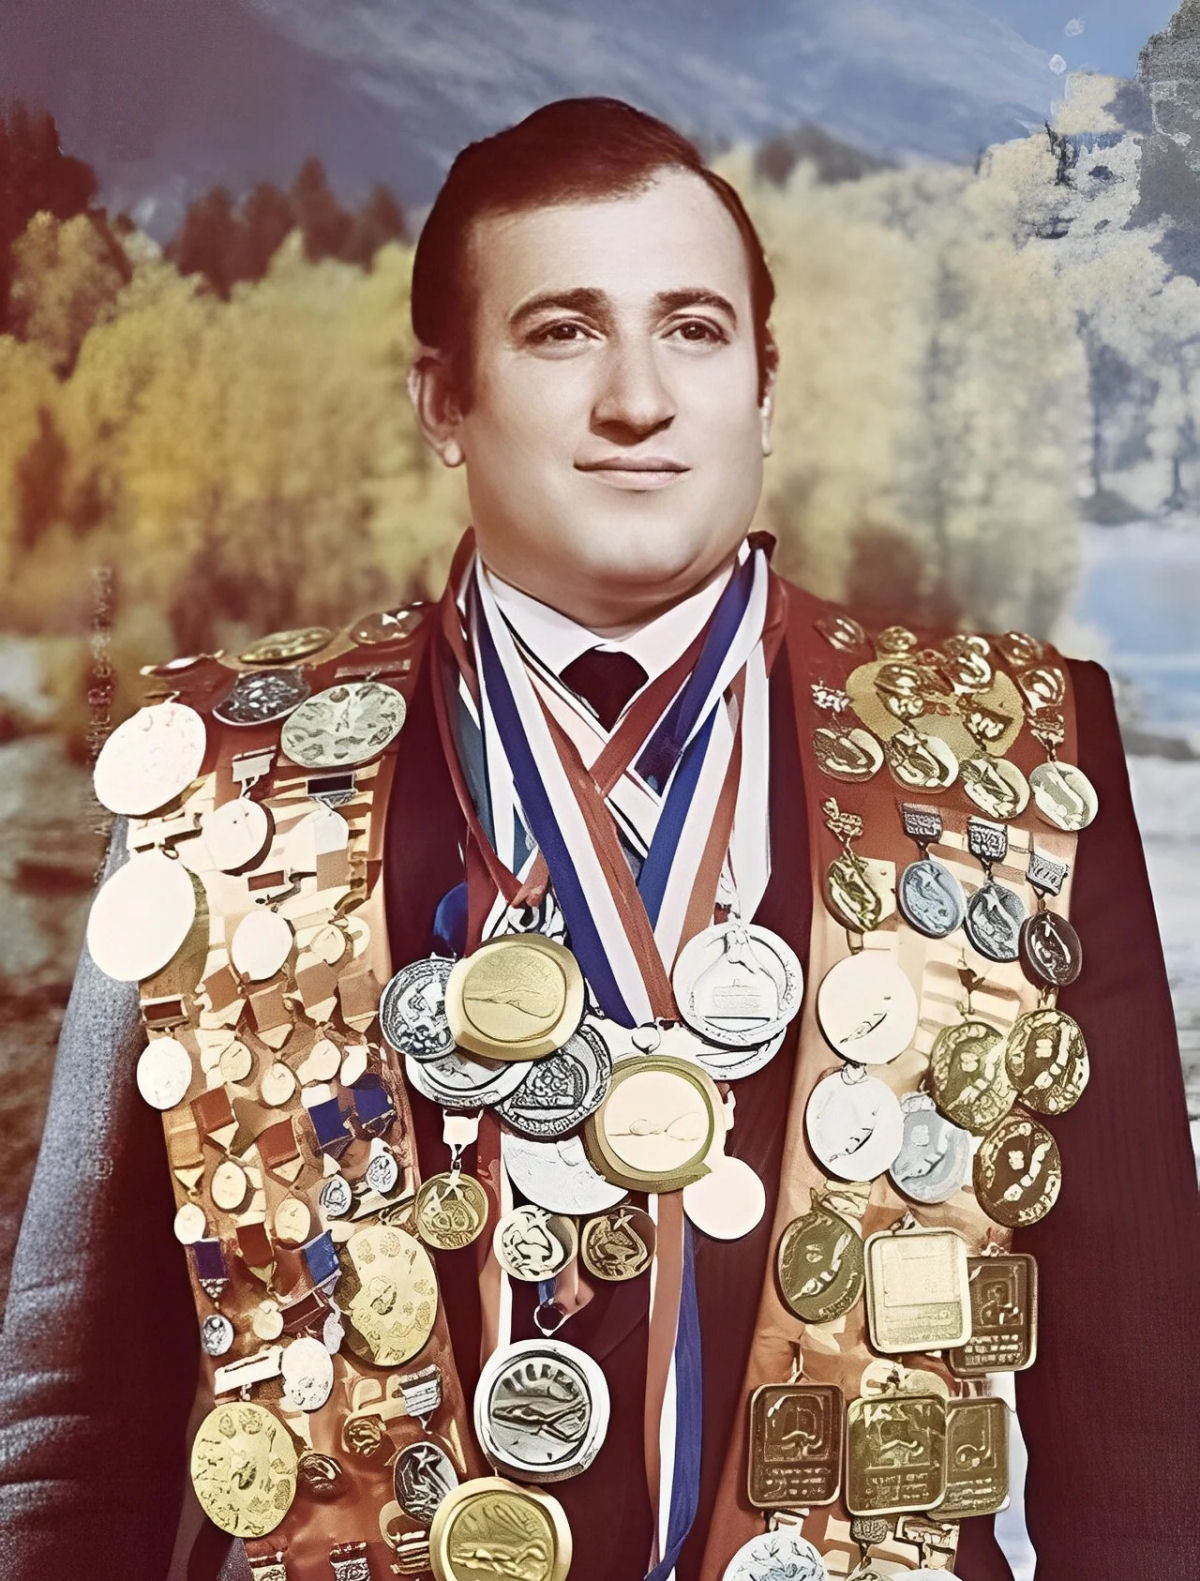 Shavarsh Karapetyan, o homem que tem aptido para ser heri